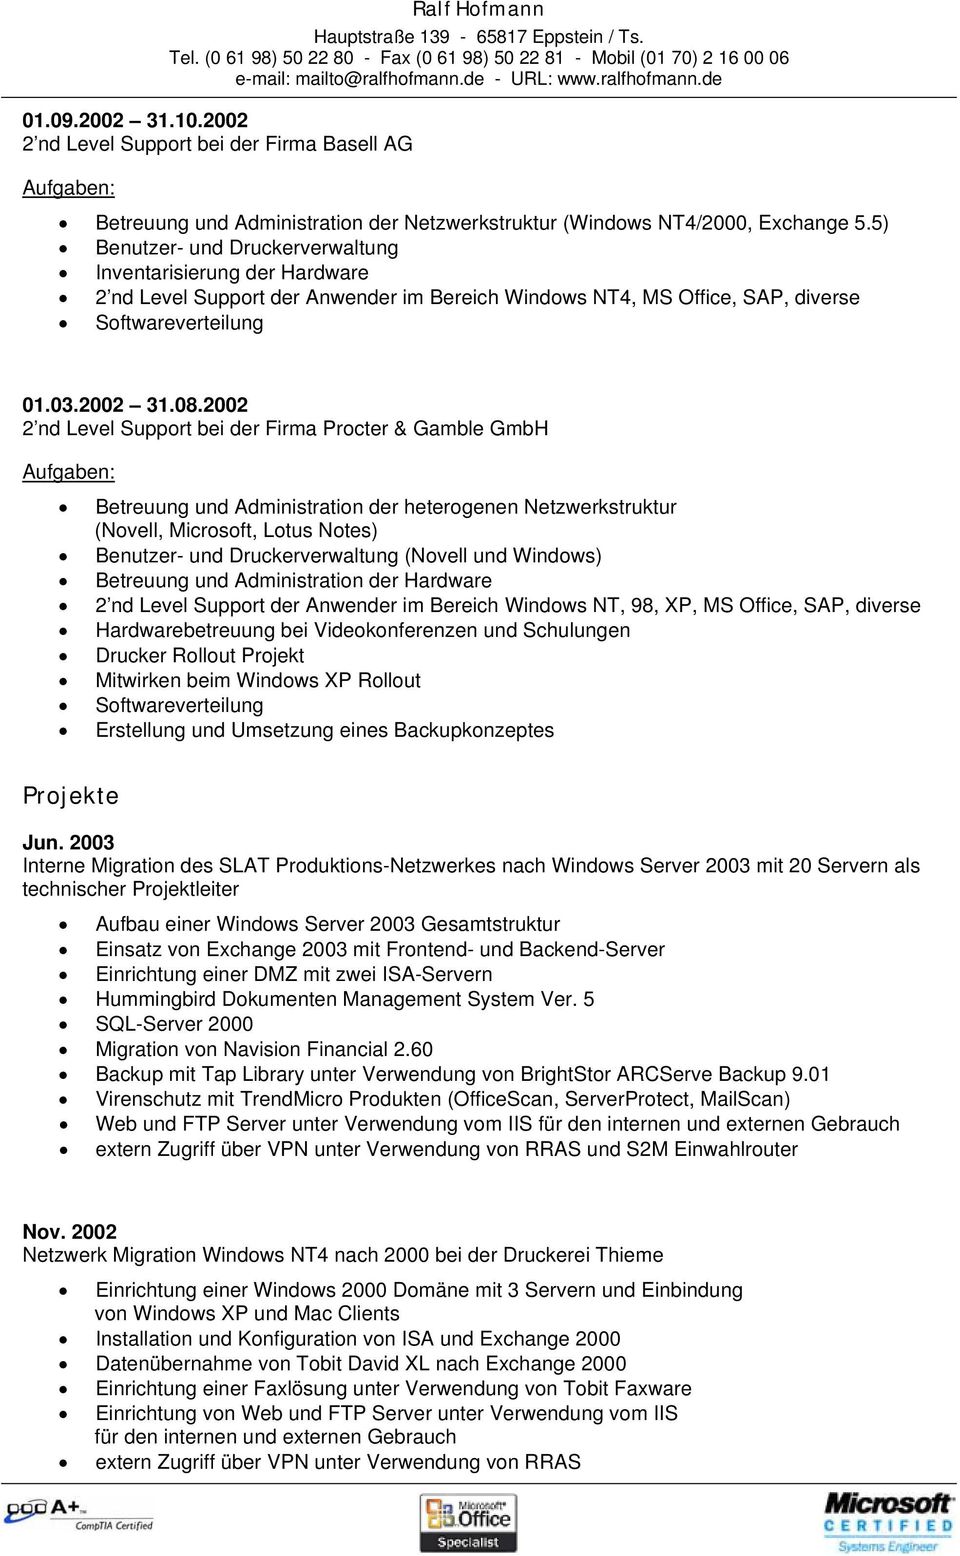 2002 2 nd Level Support bei der Firma Procter & Gamble GmbH Aufgaben: Betreuung und Administration der heterogenen Netzwerkstruktur (Novell, Microsoft, Lotus Notes) Benutzer- und Druckerverwaltung